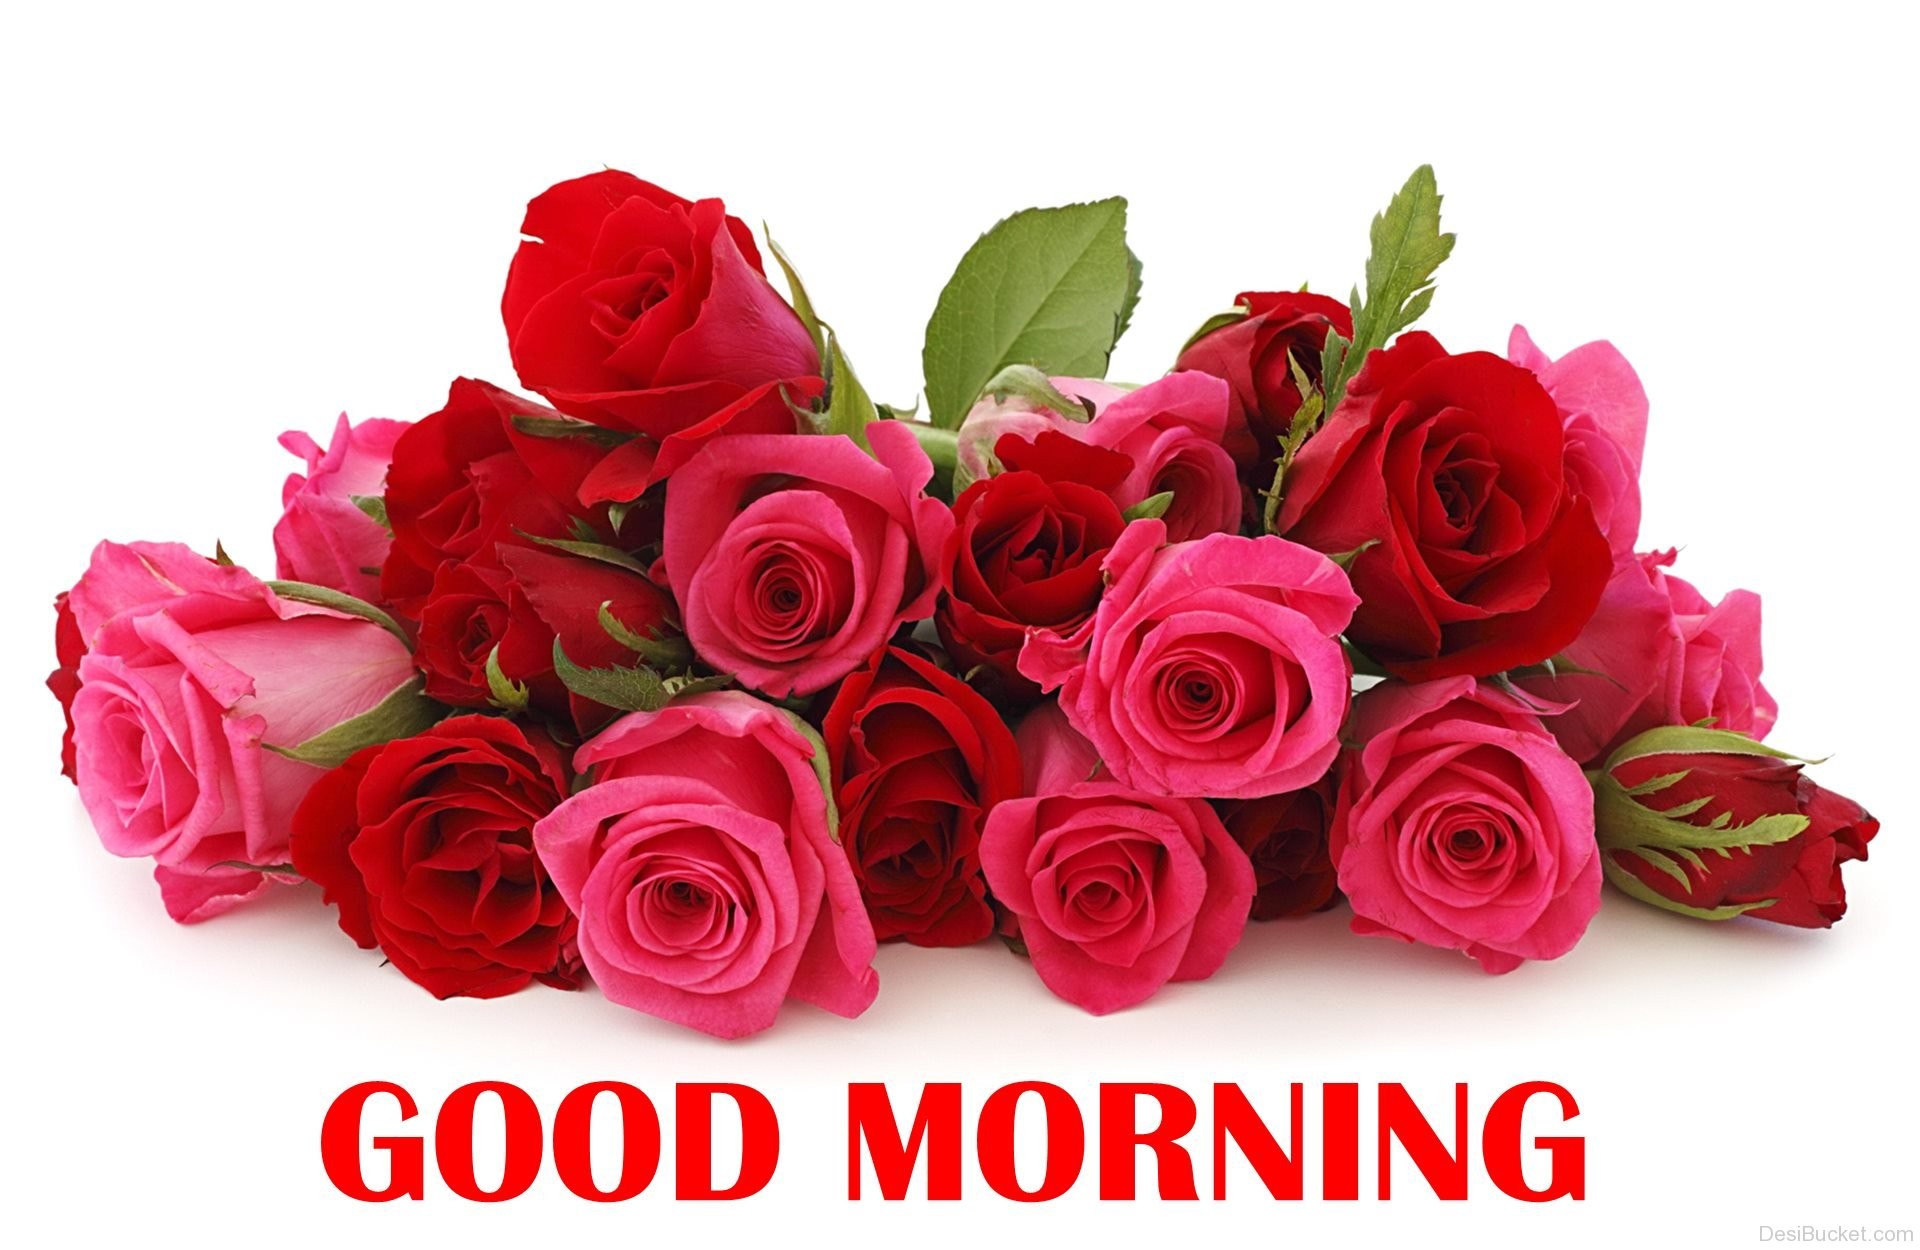 Những đóa hoa hồng đỏ rực rỡ trên nền trắng tinh khôi chắc chắn sẽ giúp bạn bắt đầu ngày mới rực rỡ và tràn đầy yêu thương. Hãy cùng đón ngày mới bằng những hình ảnh hoa hồng đầy ý nghĩa.